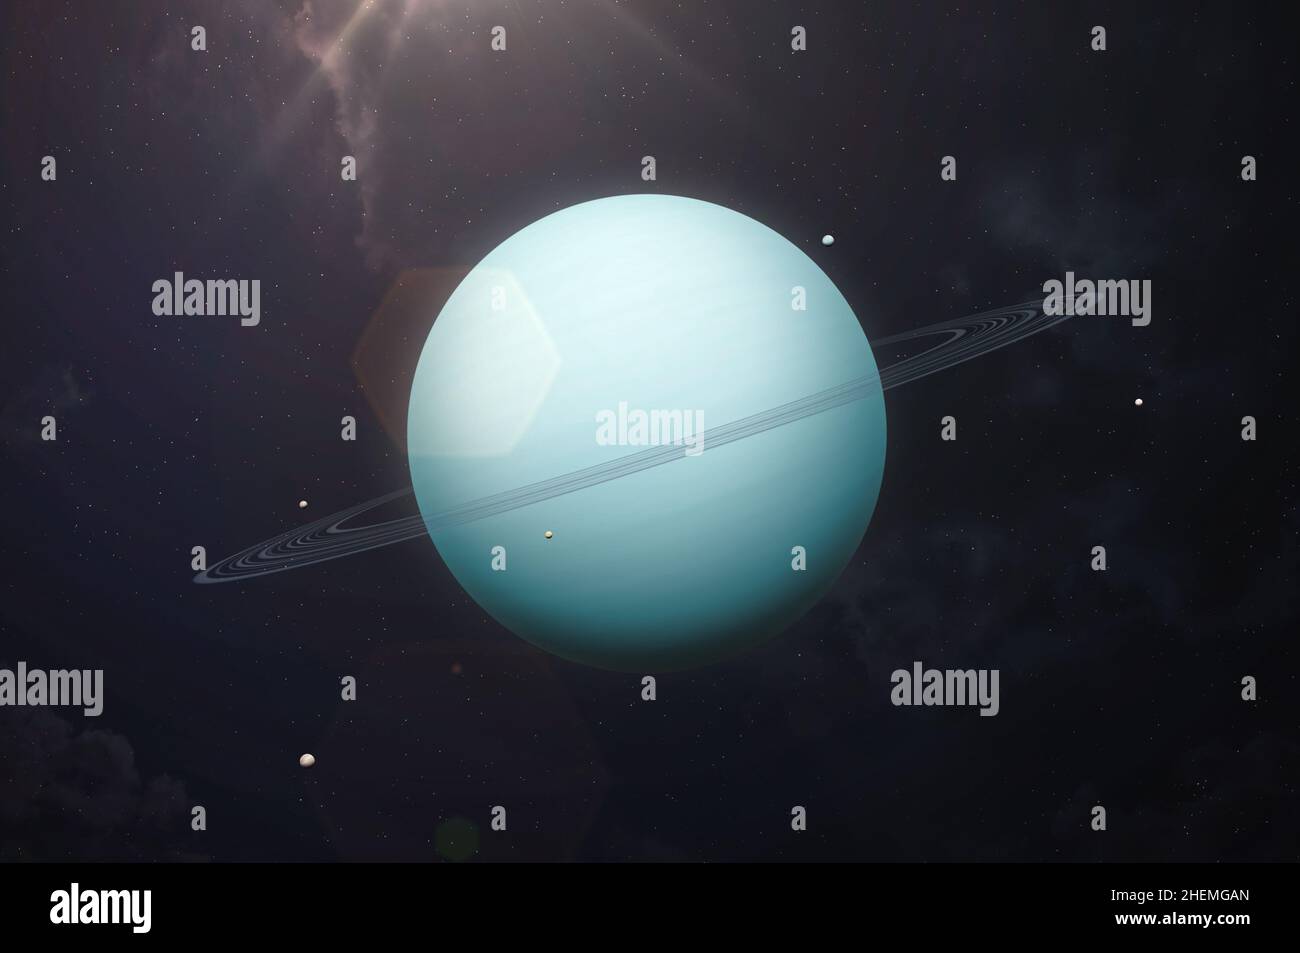 Pianeta Urano. Urano e tredici anelli, cinque satelliti principali sono Miranda, Ariel, Umbriel, Titania, Oberon. Questa immagine elementi forniti dalla NASA. Foto Stock